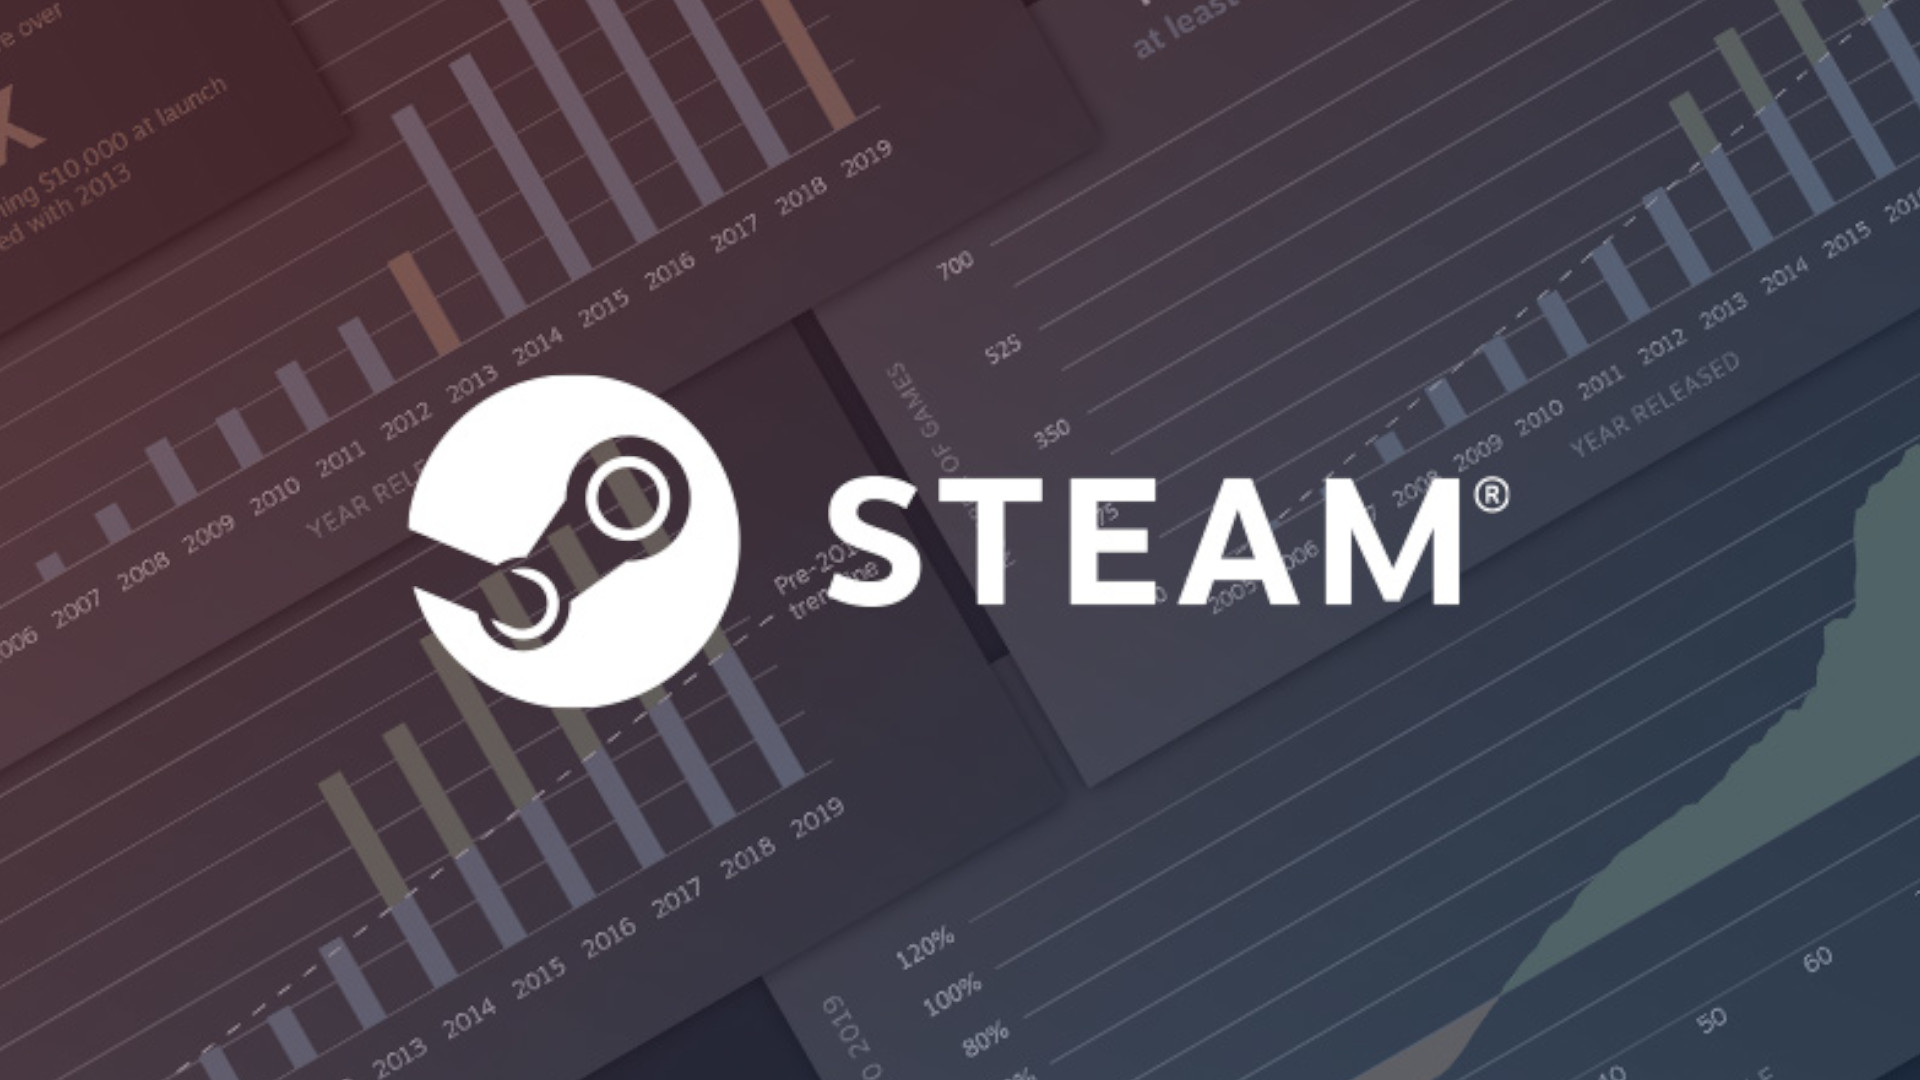 يقول Valve إن الألعاب لا تزال تجني المزيد من الأموال بينما تغمر Steam بالإصدارات الجديدة 26